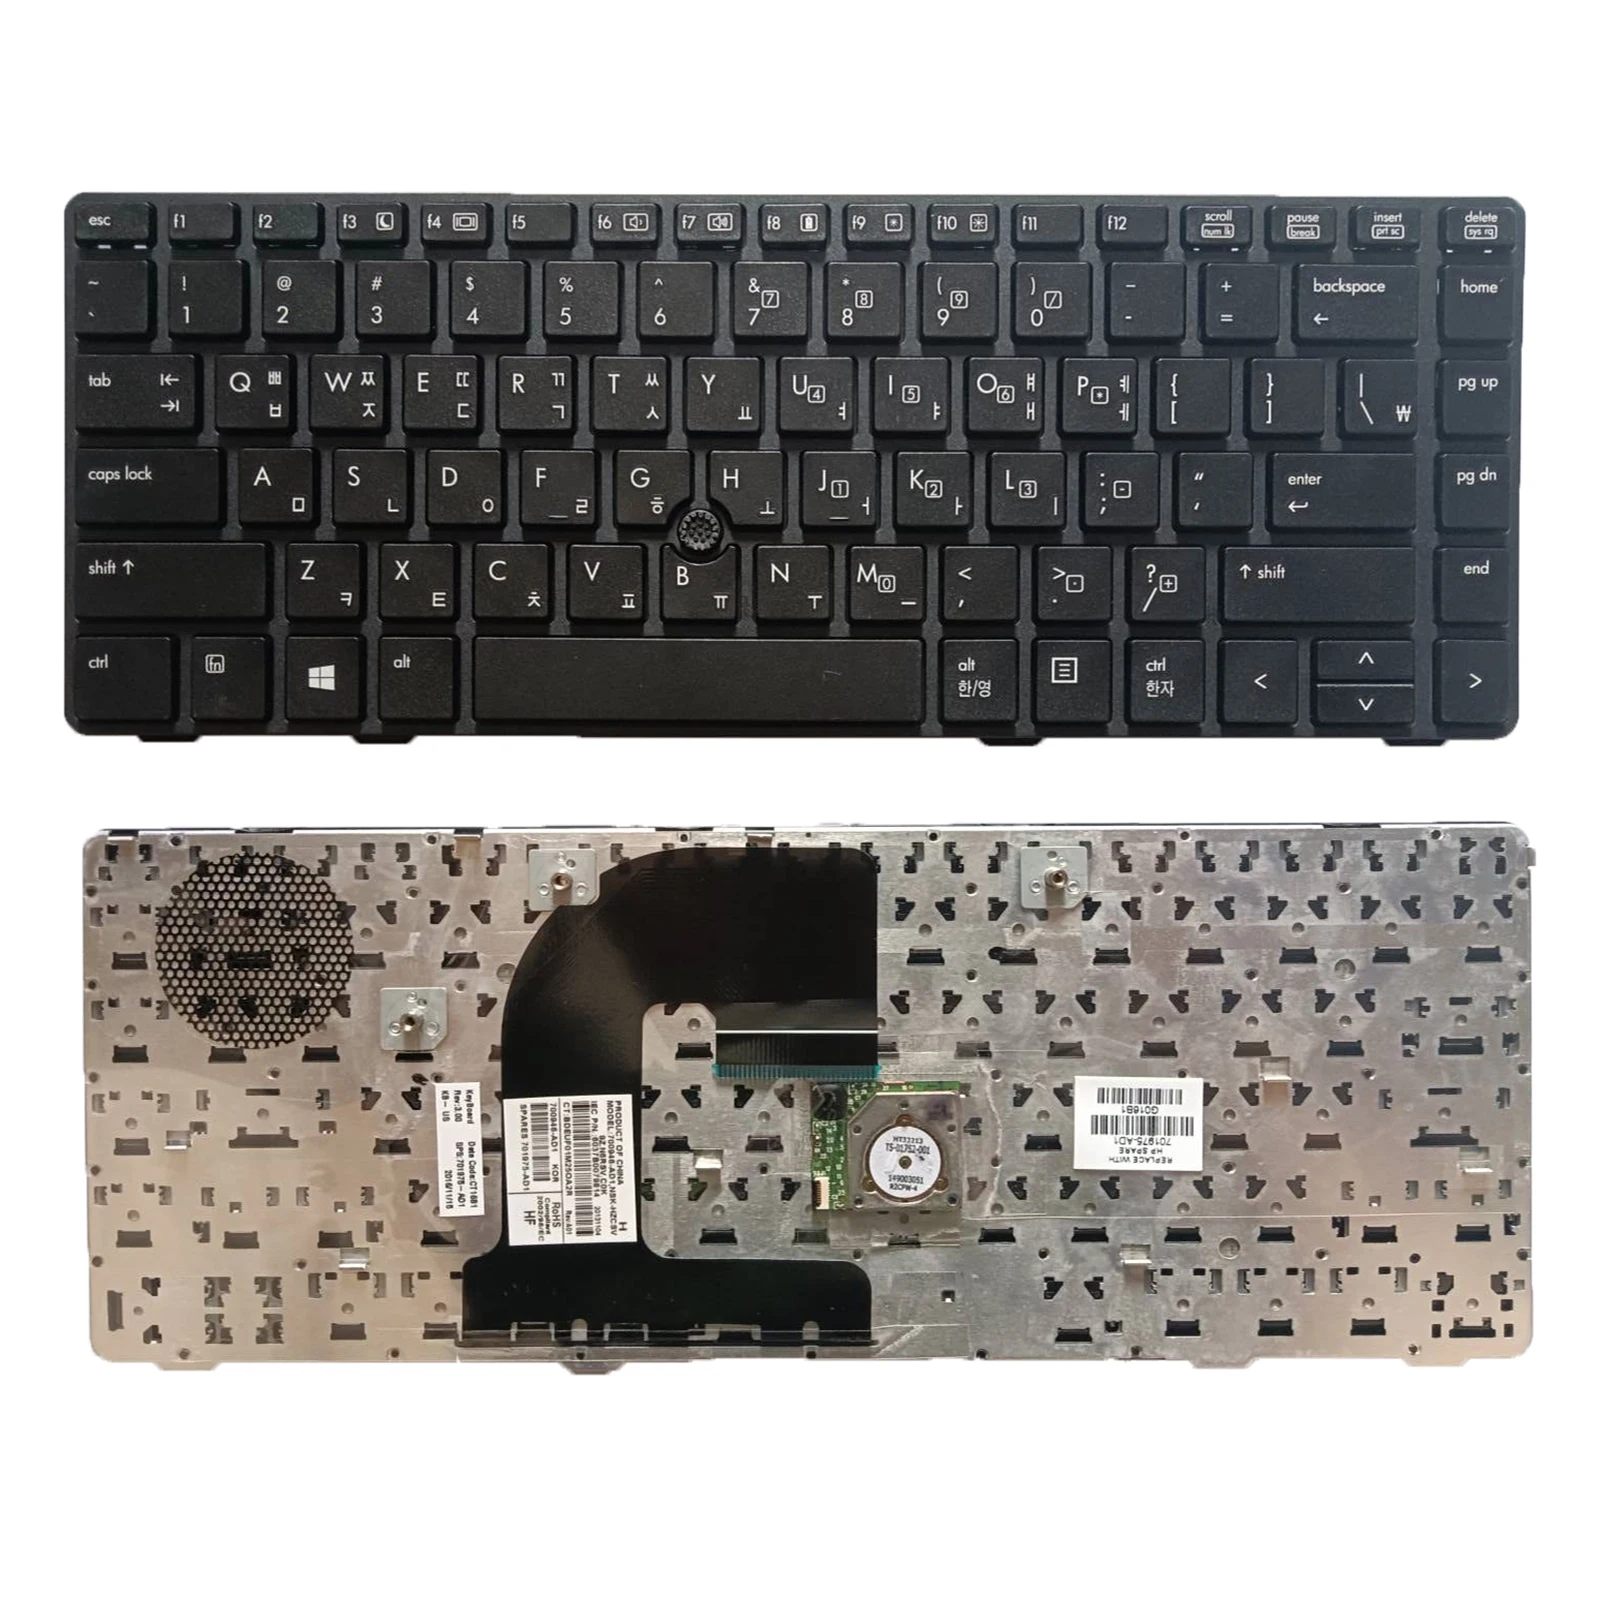 

Новая клавиатура KR для HP EliteBook 8460p 8460w 8470p 8470w ProBook 6460b 6465b в черной рамке